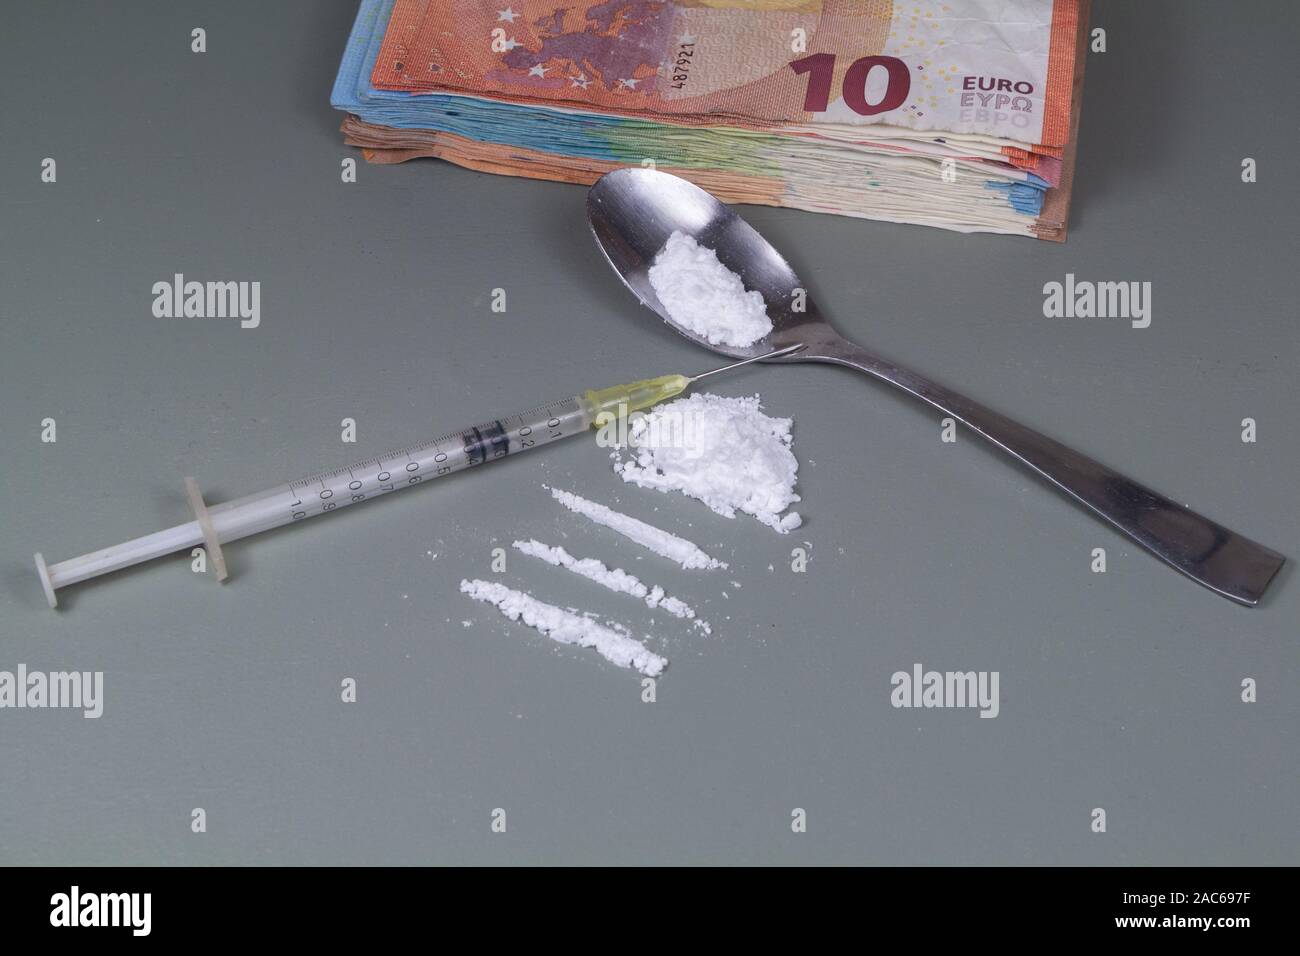 Kokain Leitungen bereit, auf einen Tisch, die Euro-banknoten und die Spritze zu schnüffeln Stockfoto